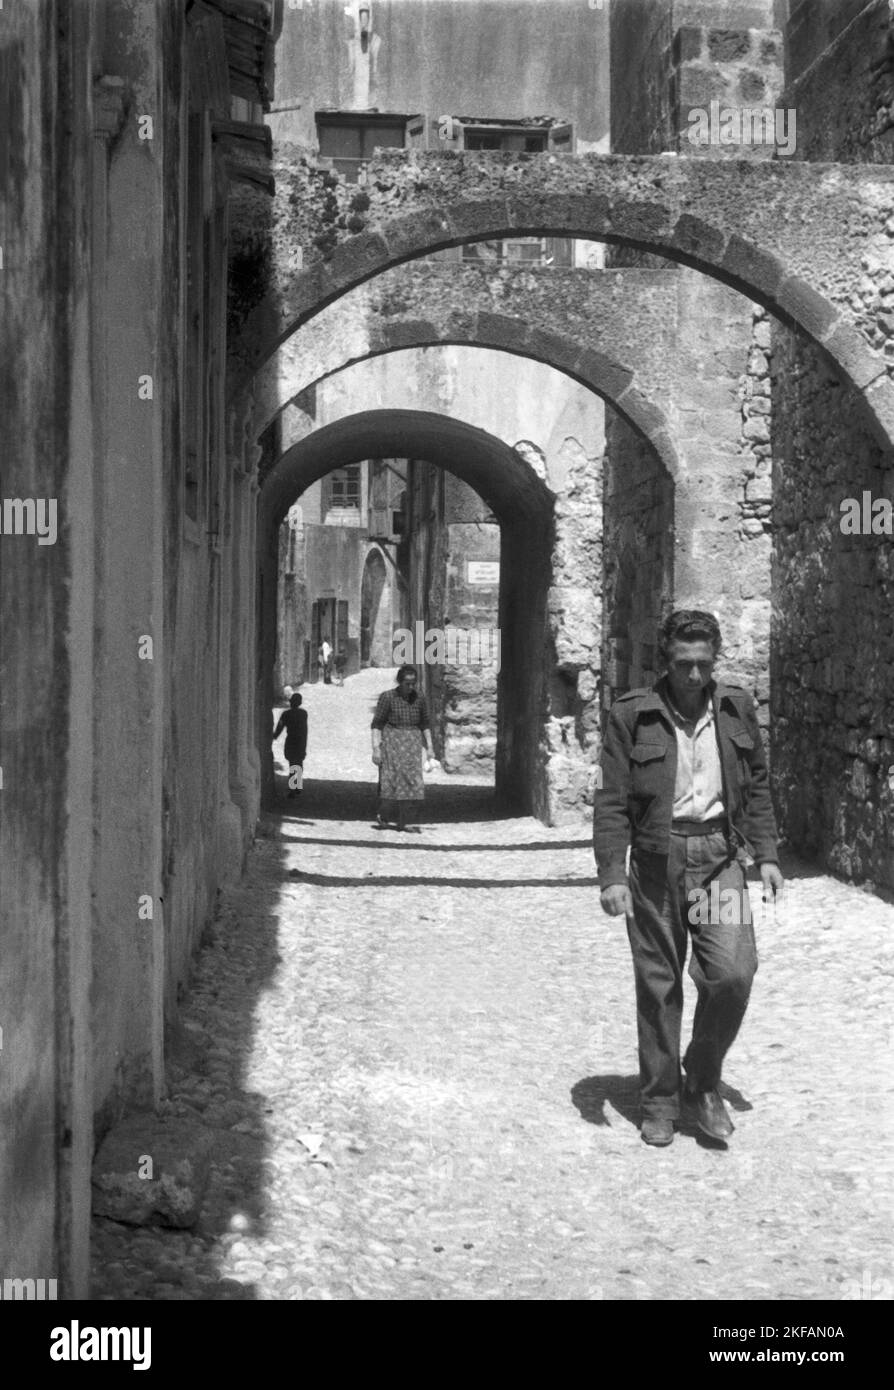 Ein Mann geht durch eine kleine enge Gasse in Griechenland, 1950er Jahre. A man walking through a narrow lane in Greece, 1950s. Stock Photo